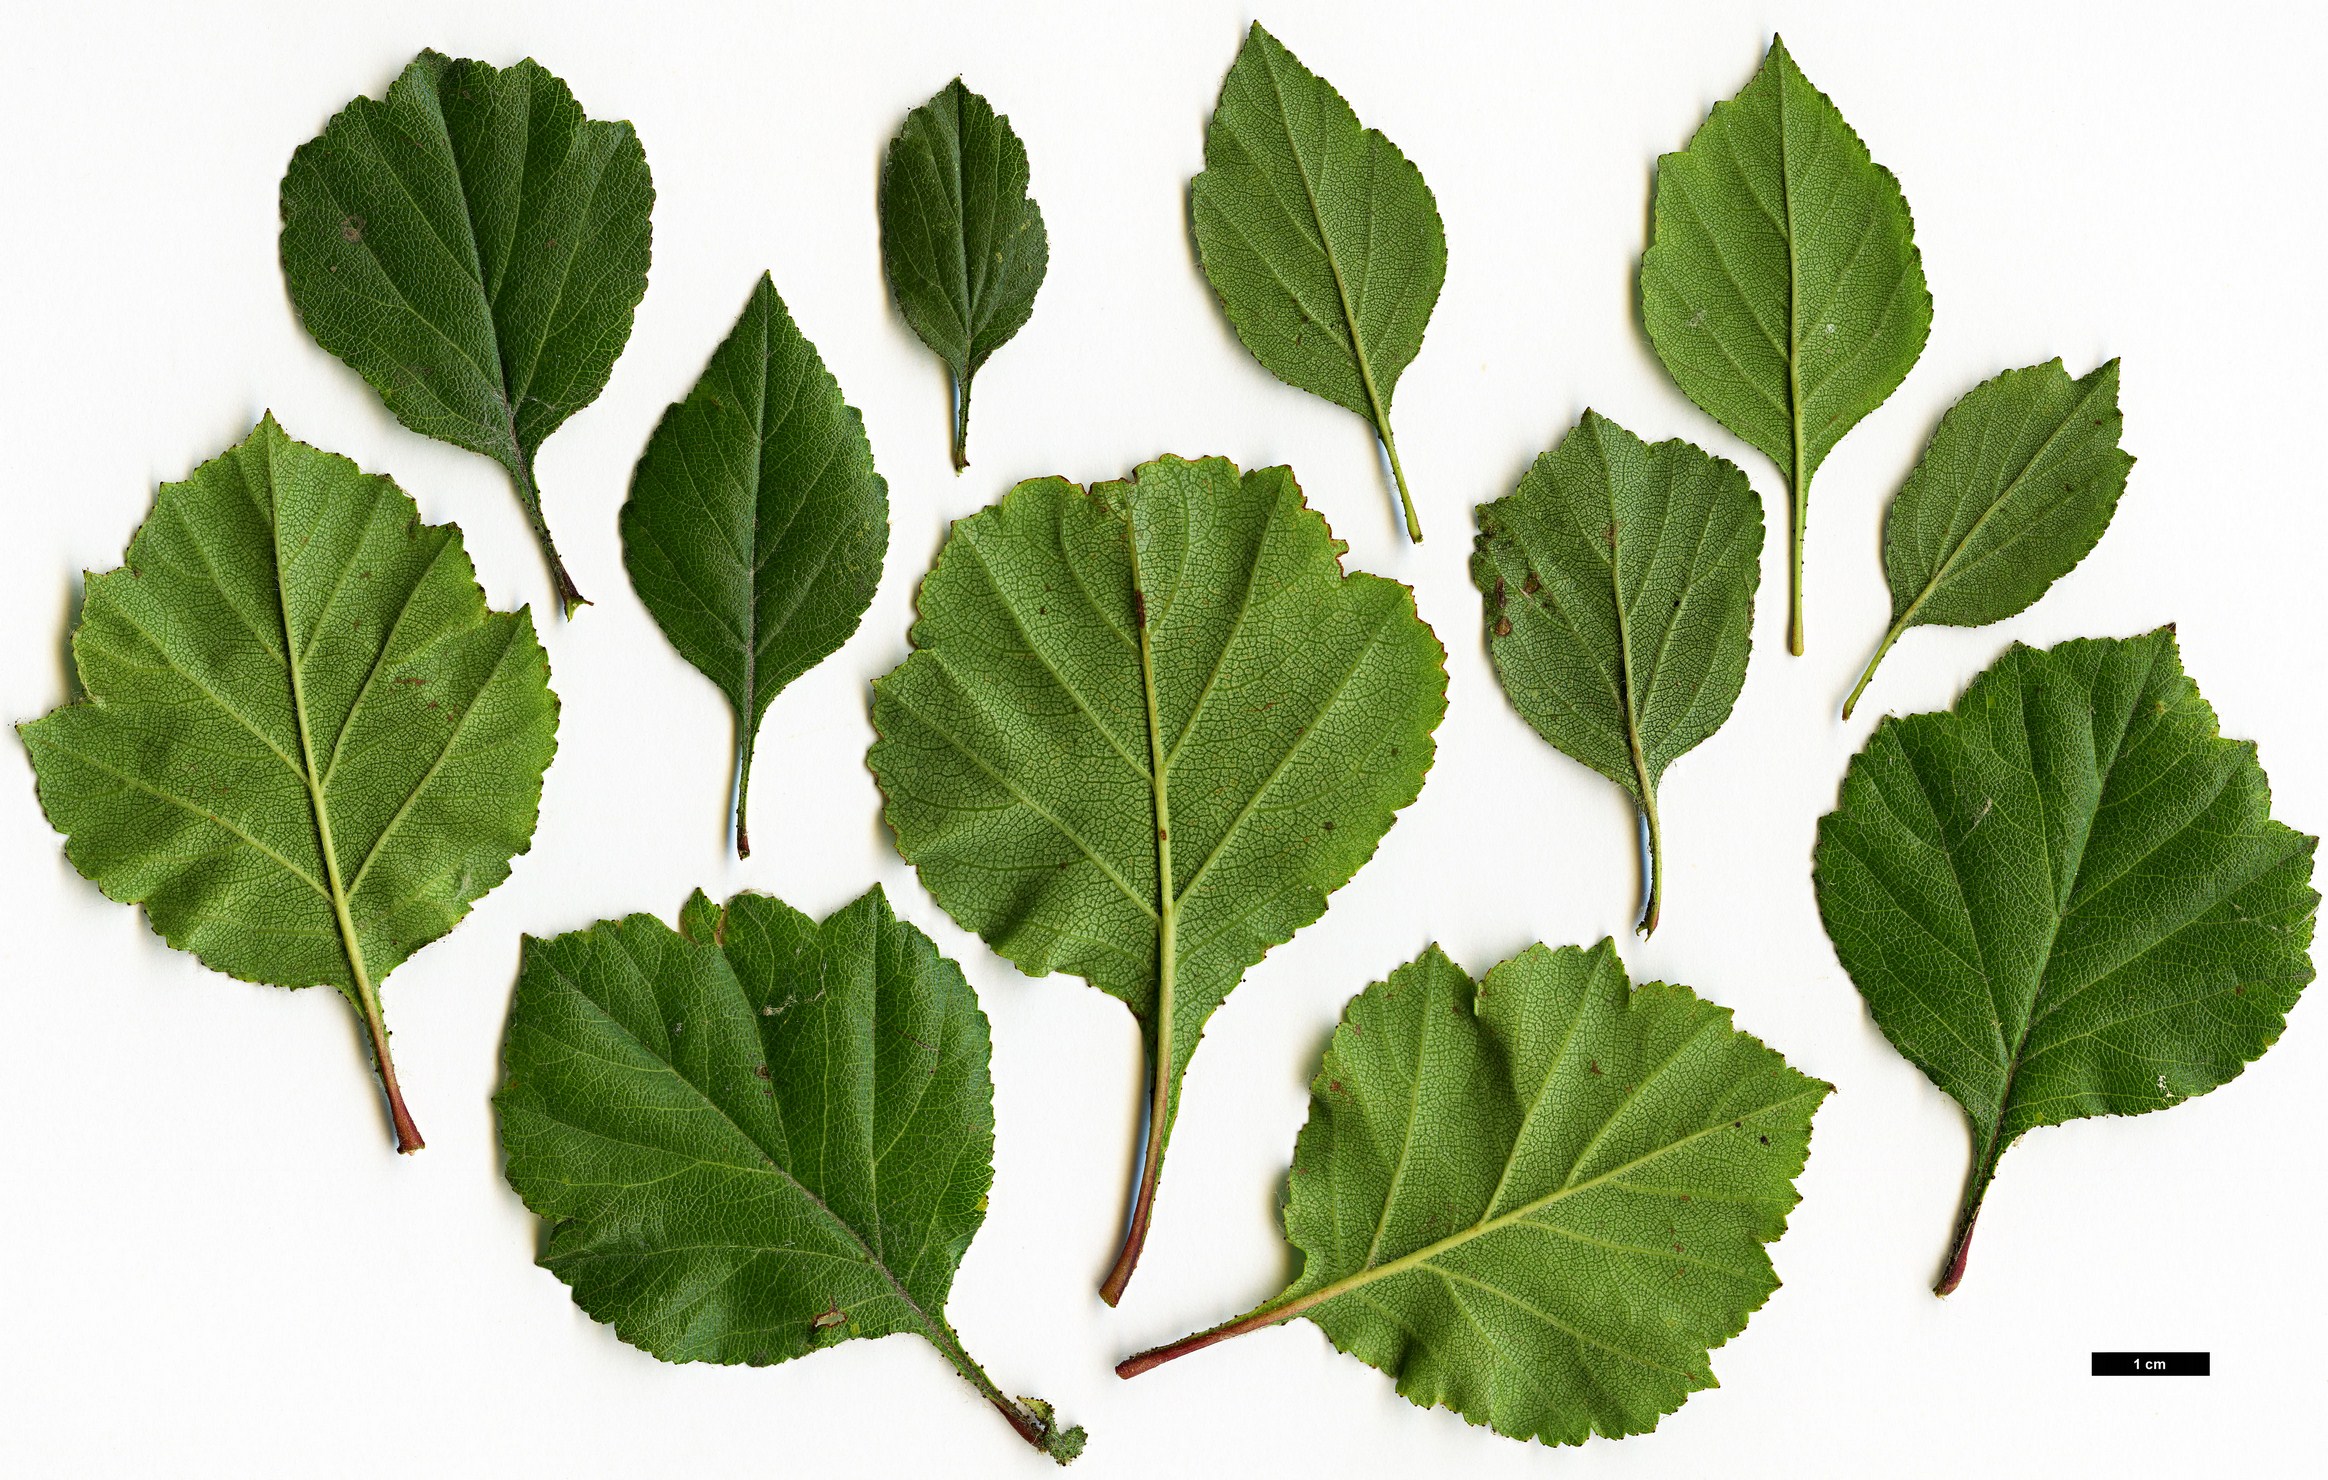 High resolution image: Family: Rosaceae - Genus: Crataegus - Taxon: aprica